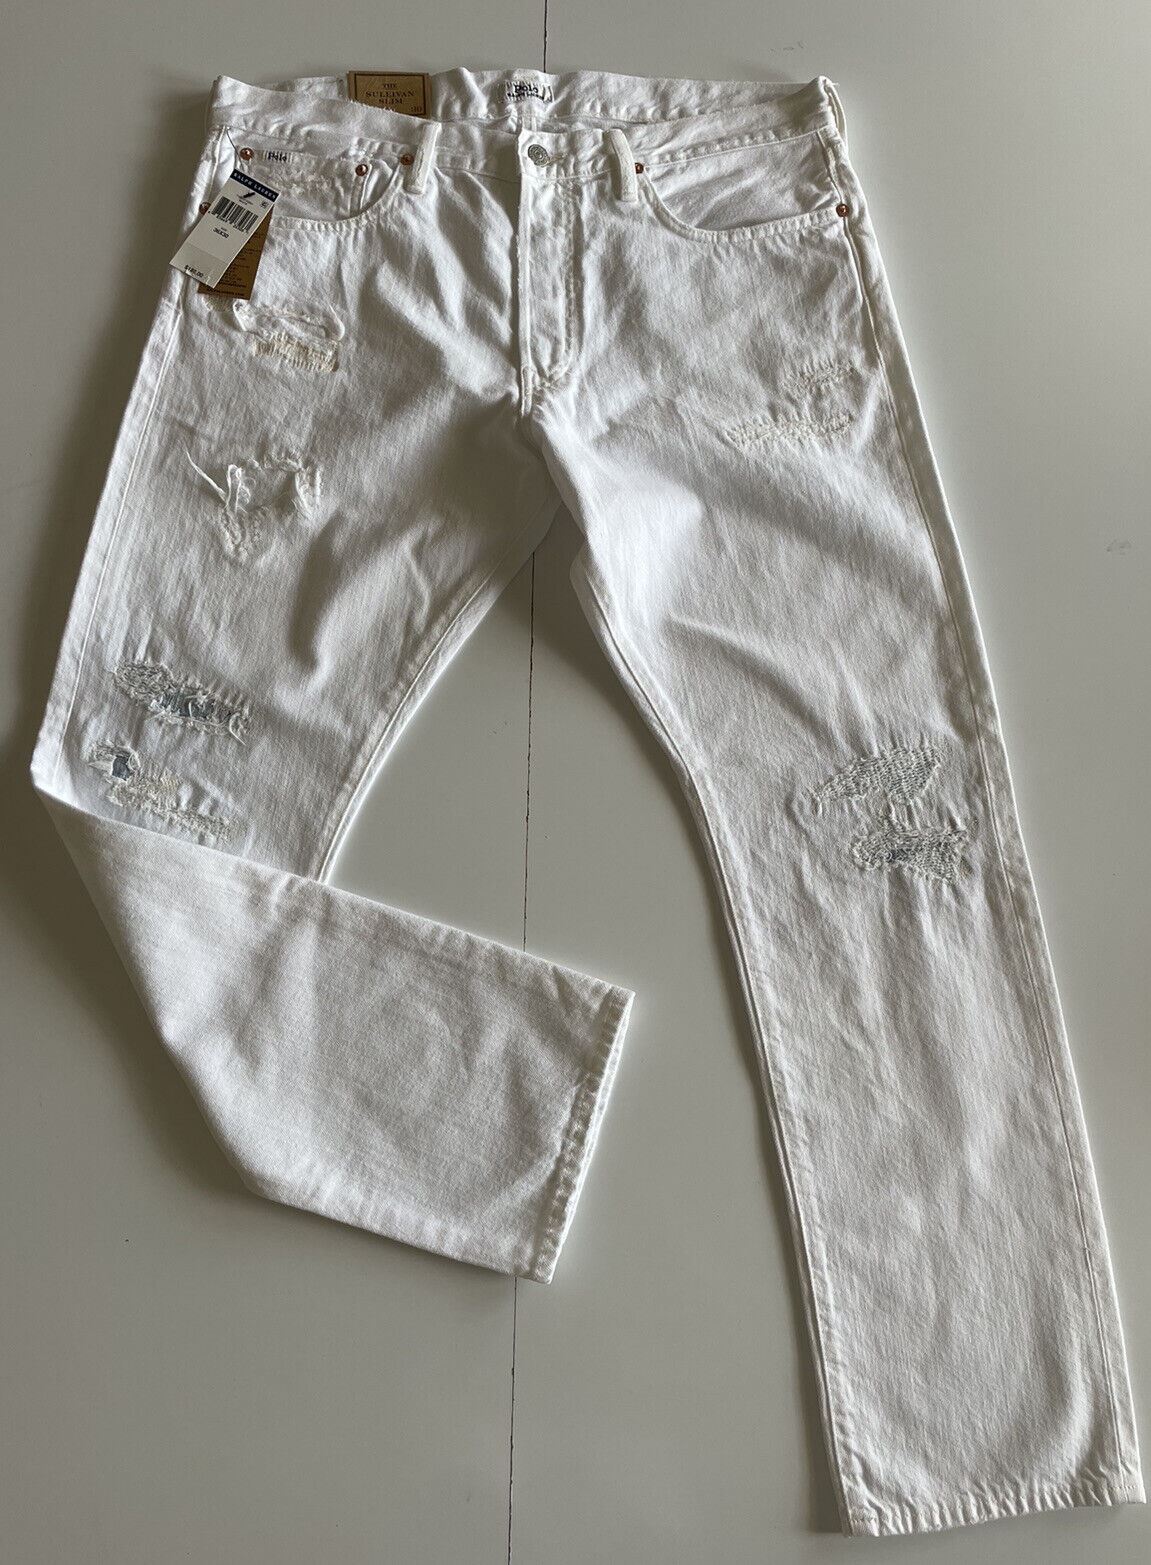 Мужские узкие белые джинсы Polo Ralph Lauren The Sullivan стоимостью 188 долларов США, размер 36x32 (38 дюймов)